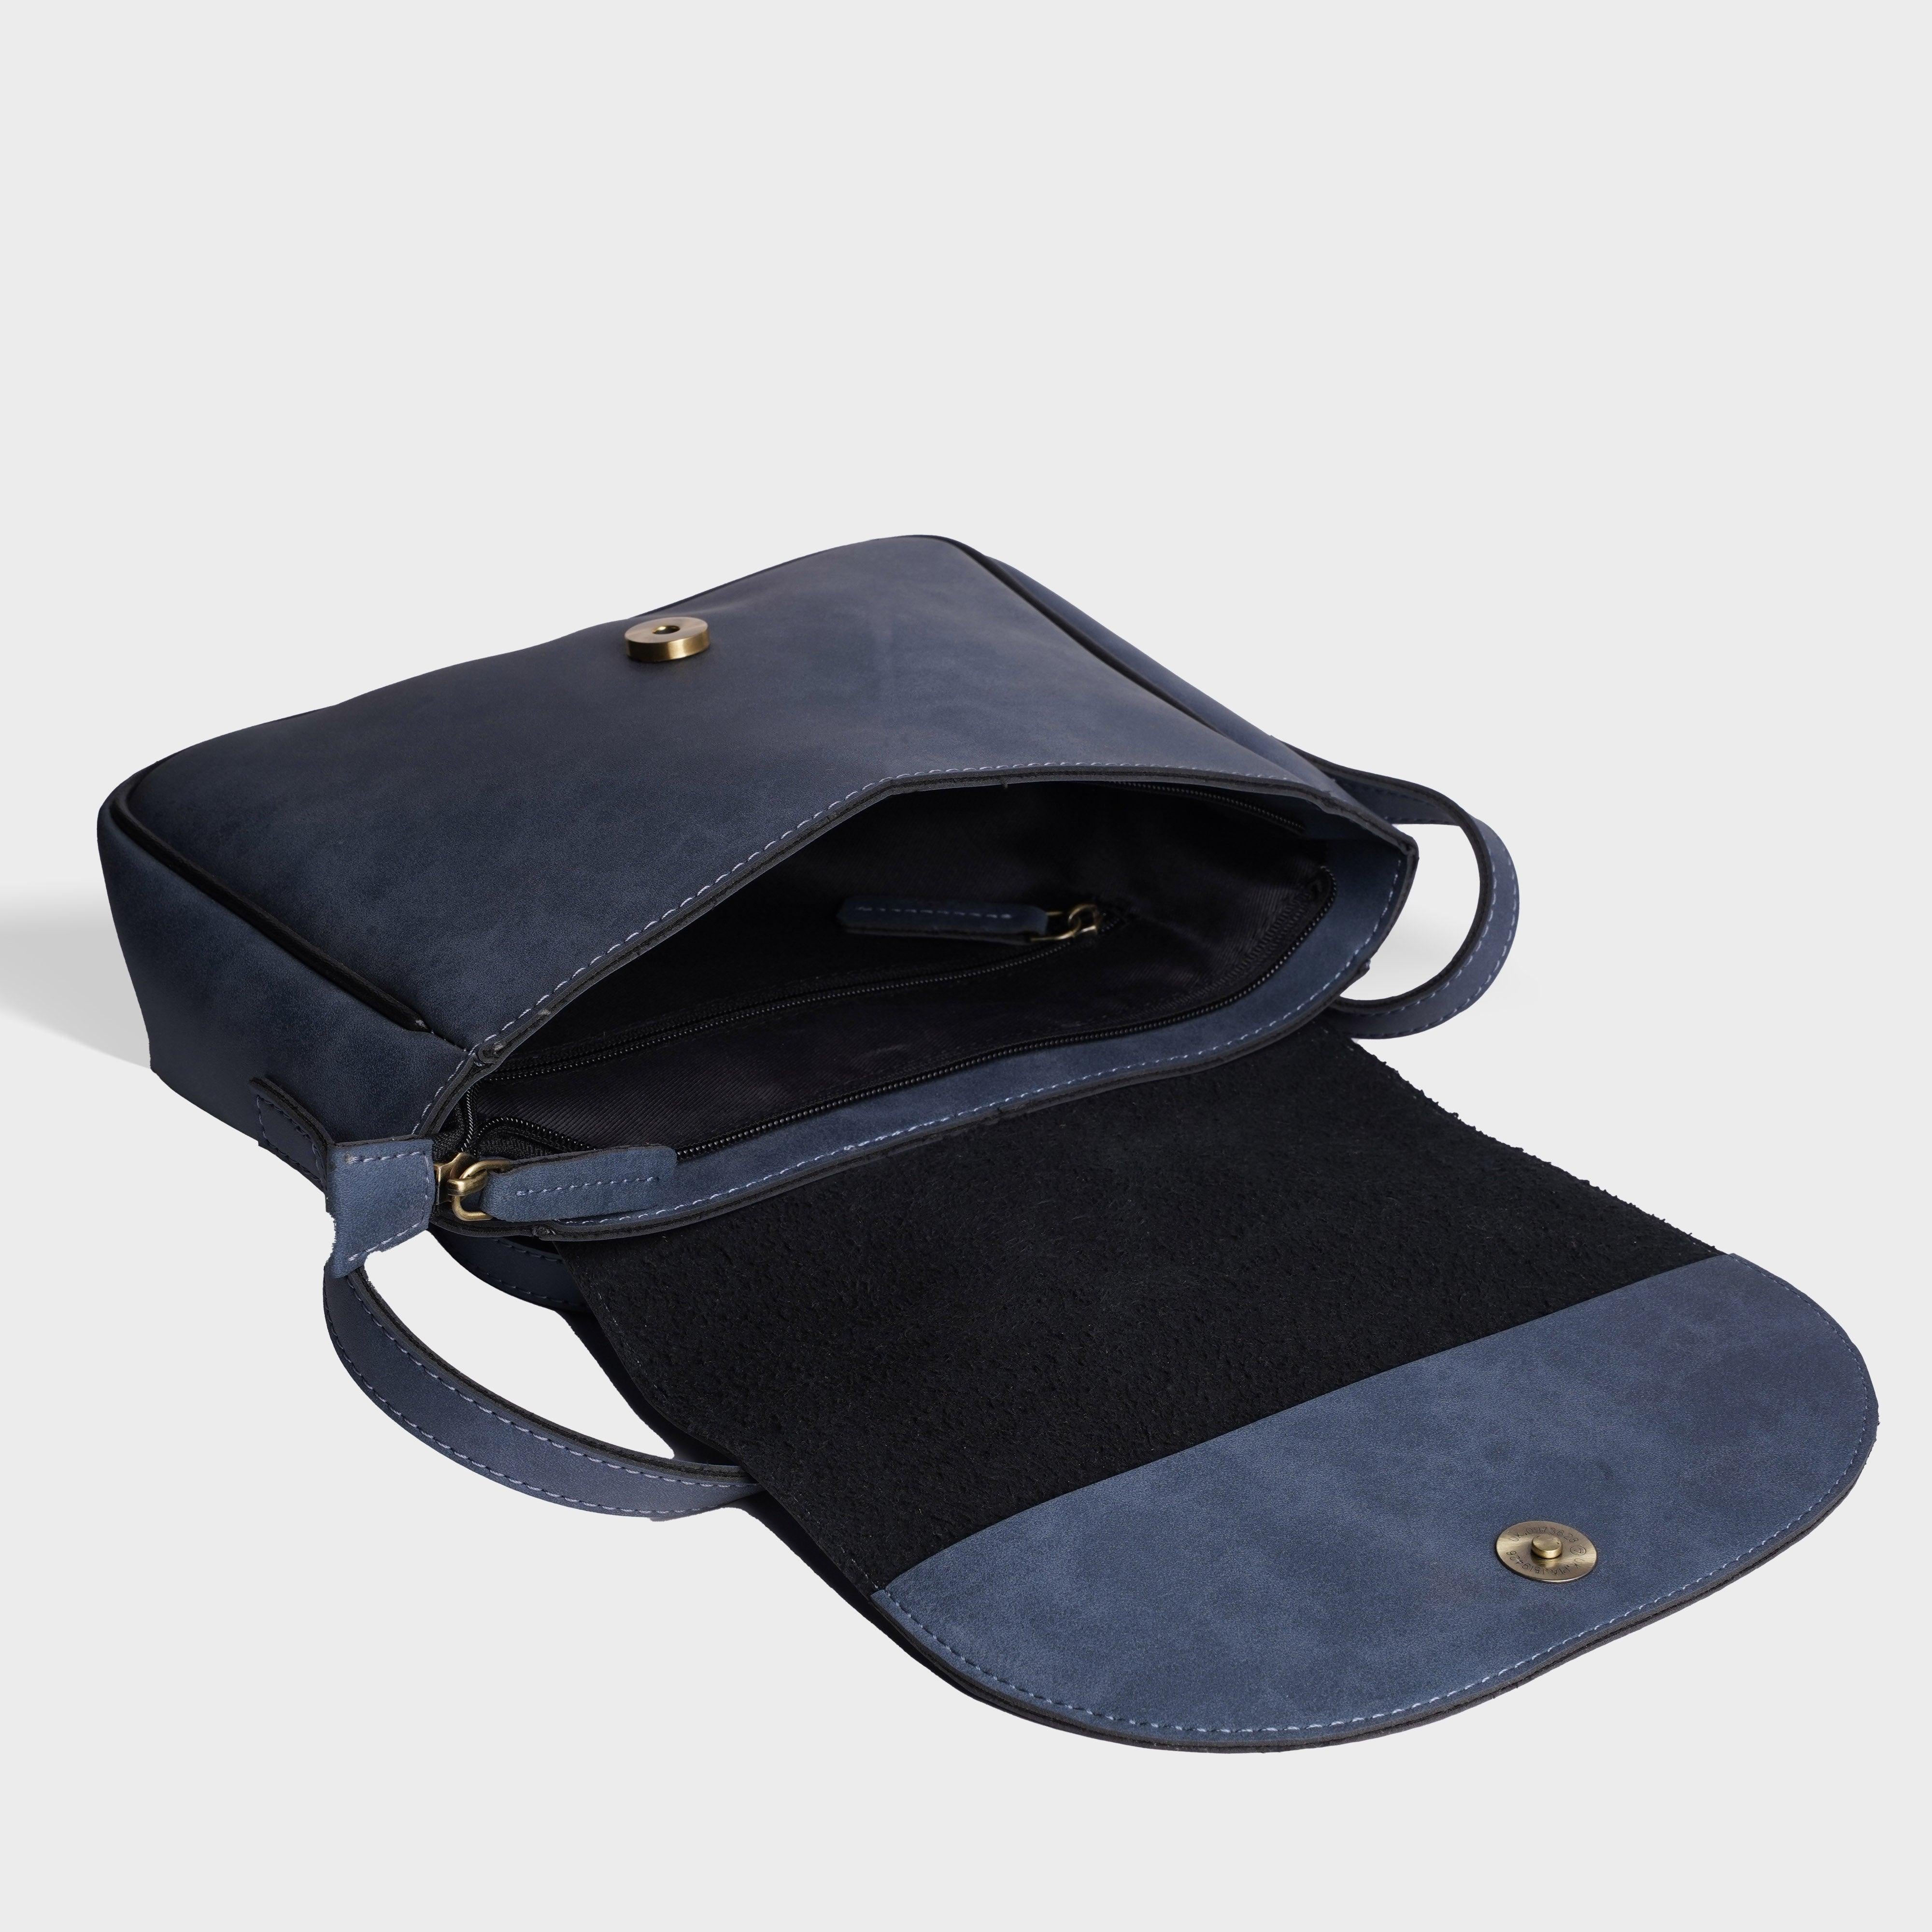 Personalised Satchel Crossbody Bag-Jeans Blue - Travelsleek